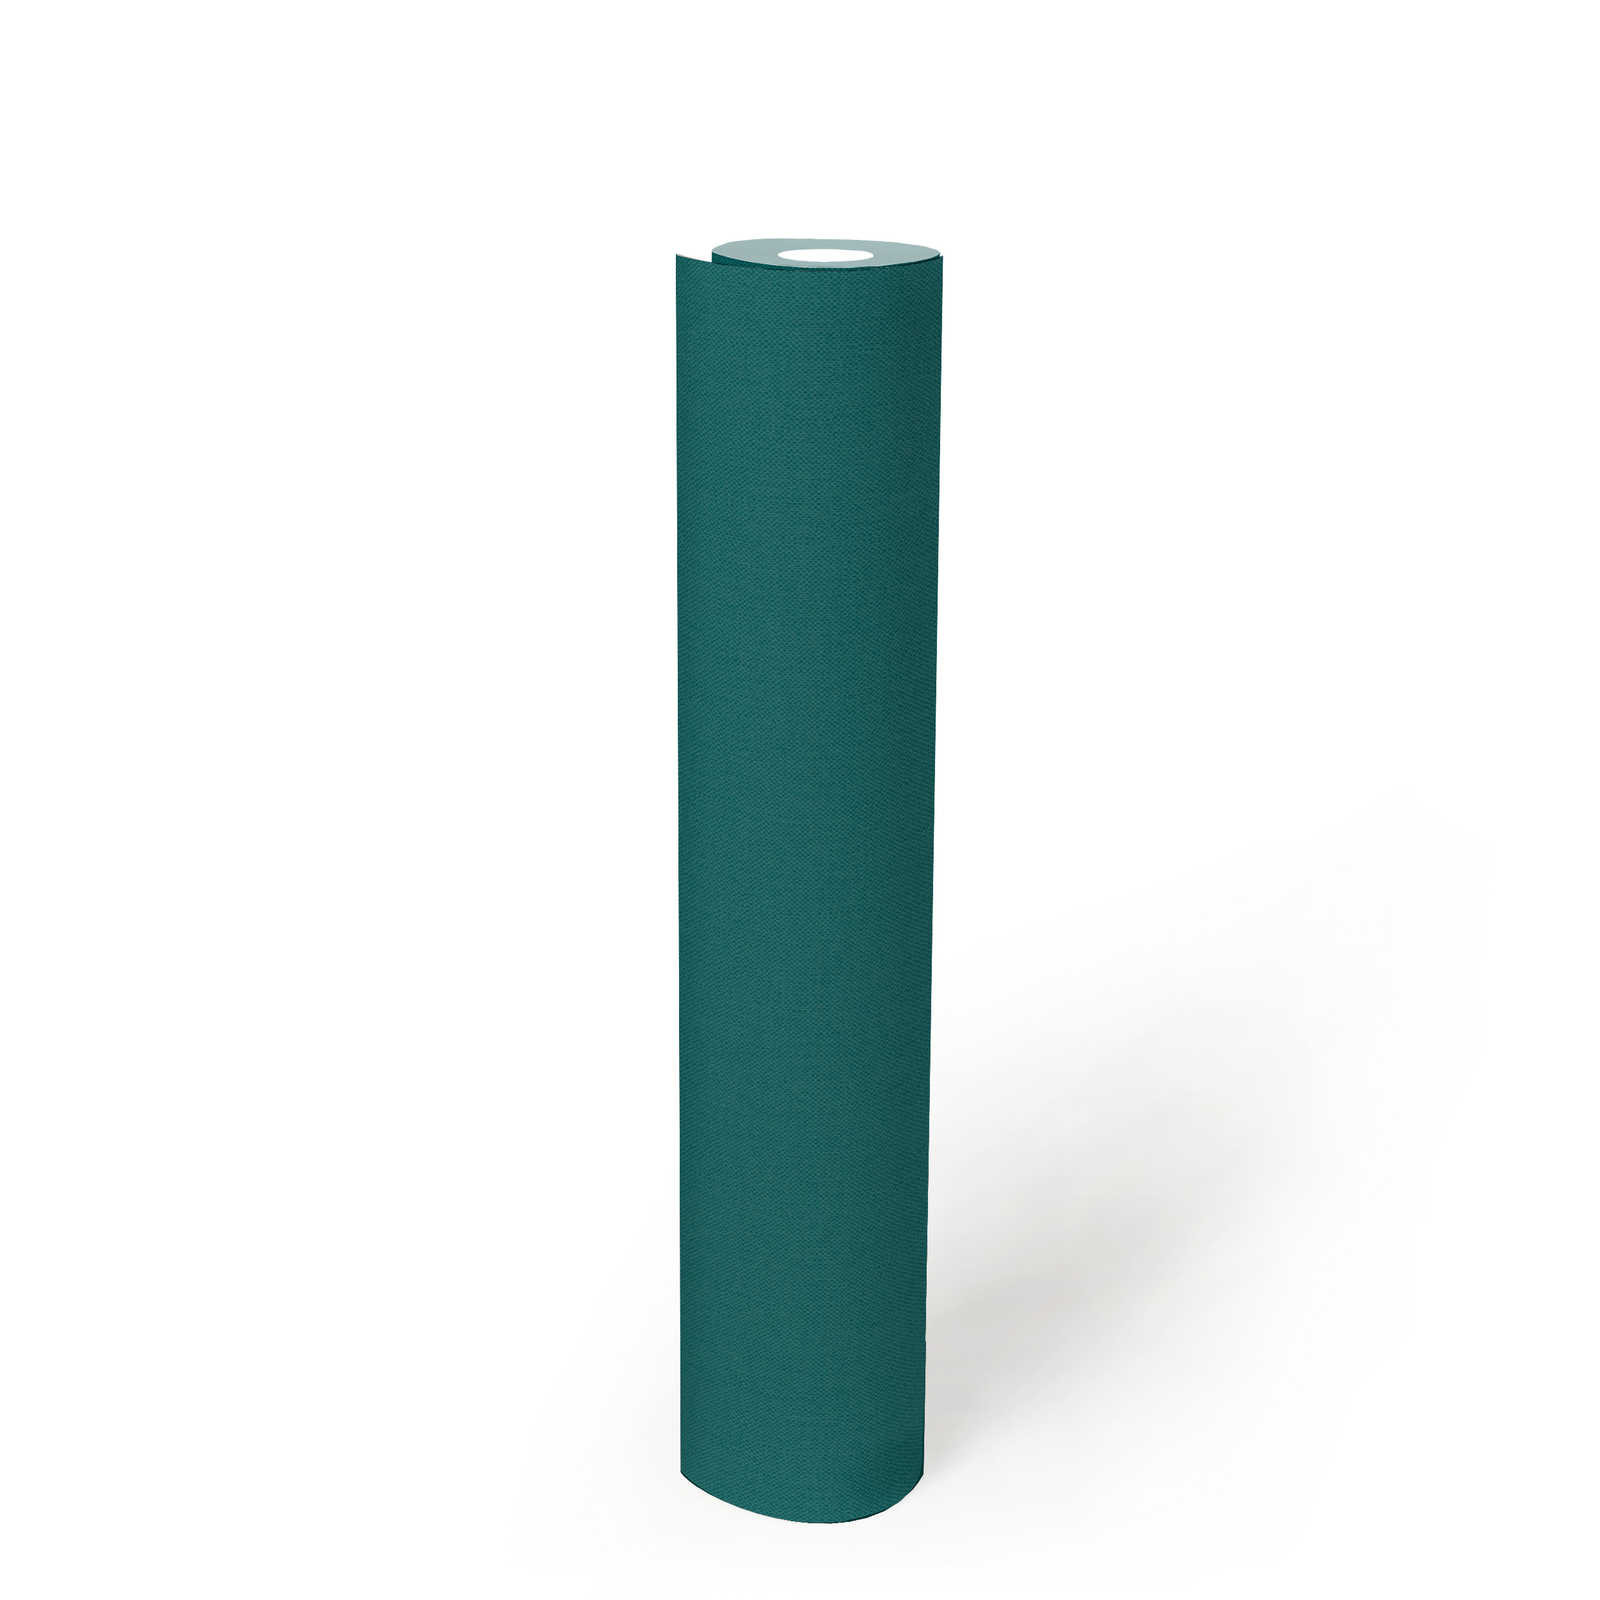             Papier peint vert foncé avec structure textile bleu d'eau uni mat
        